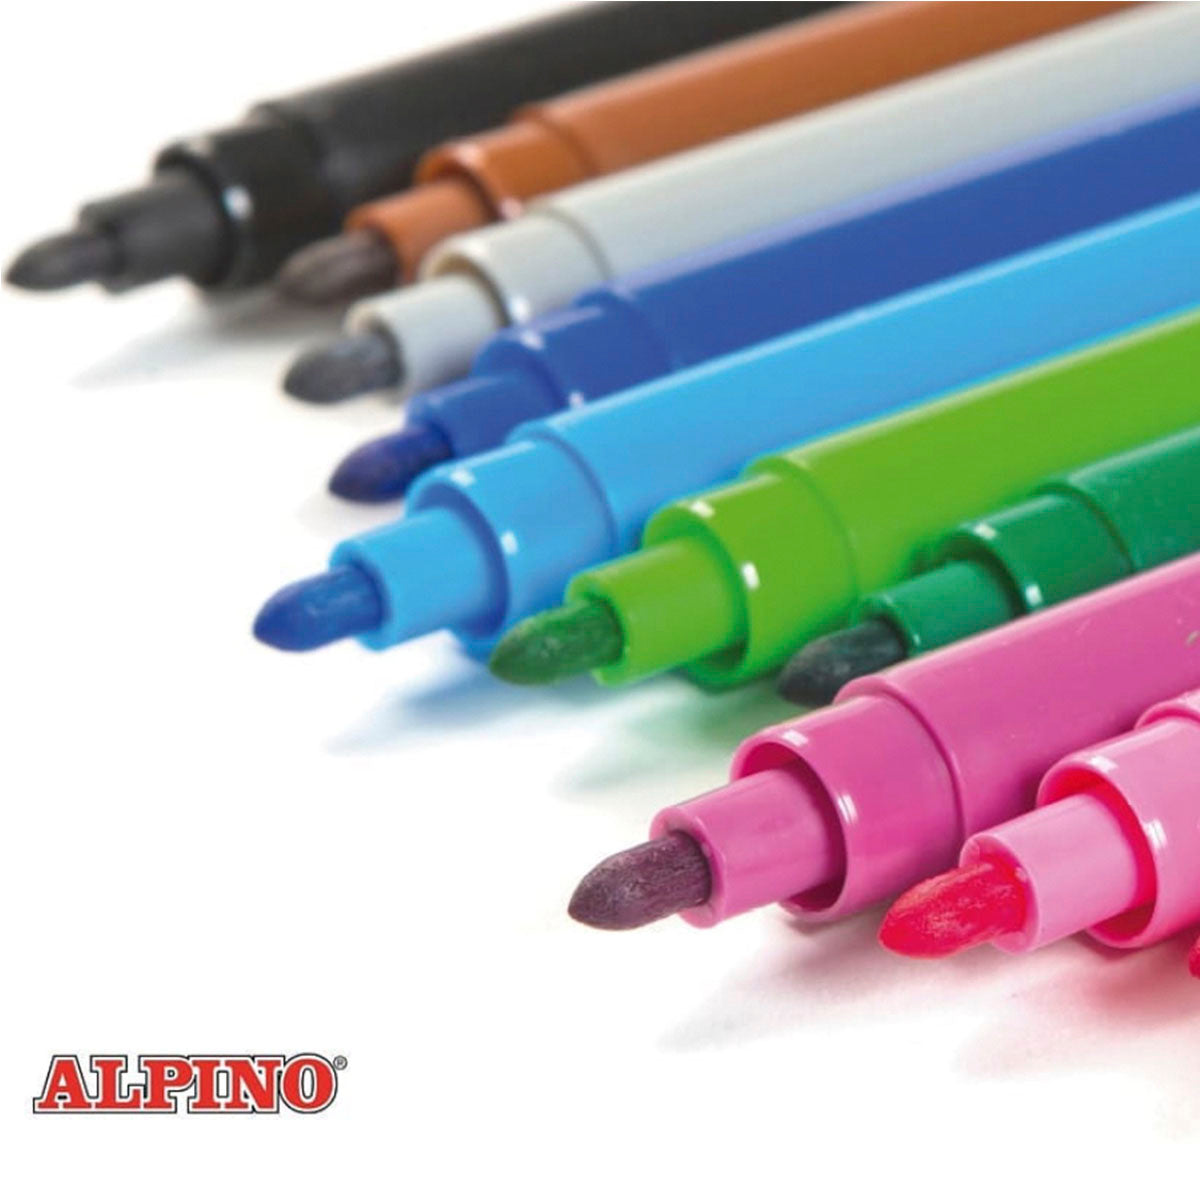 ALPINO Coloring - Estuche 24 Rotuladores para Niños de Colores Brillantes y Súper Lavables